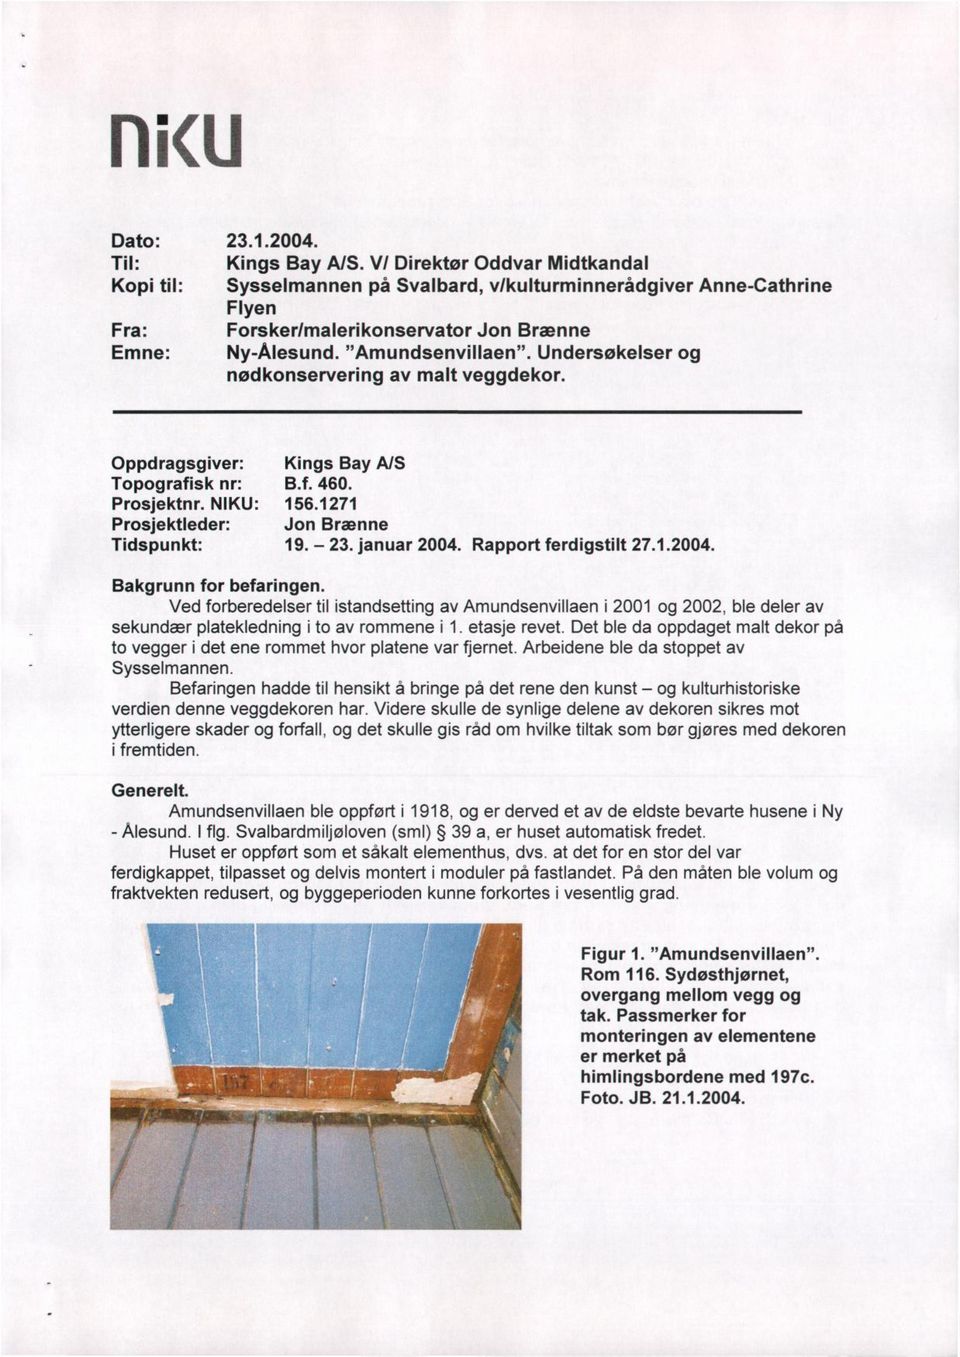 Undersøkelser og nødkonservering av malt veggdekor. Oppdragsgiver: Kings Bay A/S Topografisk nr: B.f. 460. Prosjektnr. NIKU: 156.1271 Prosjektleder: Jon Brænne Tidspunkt: 19. - 23. januar 2004.